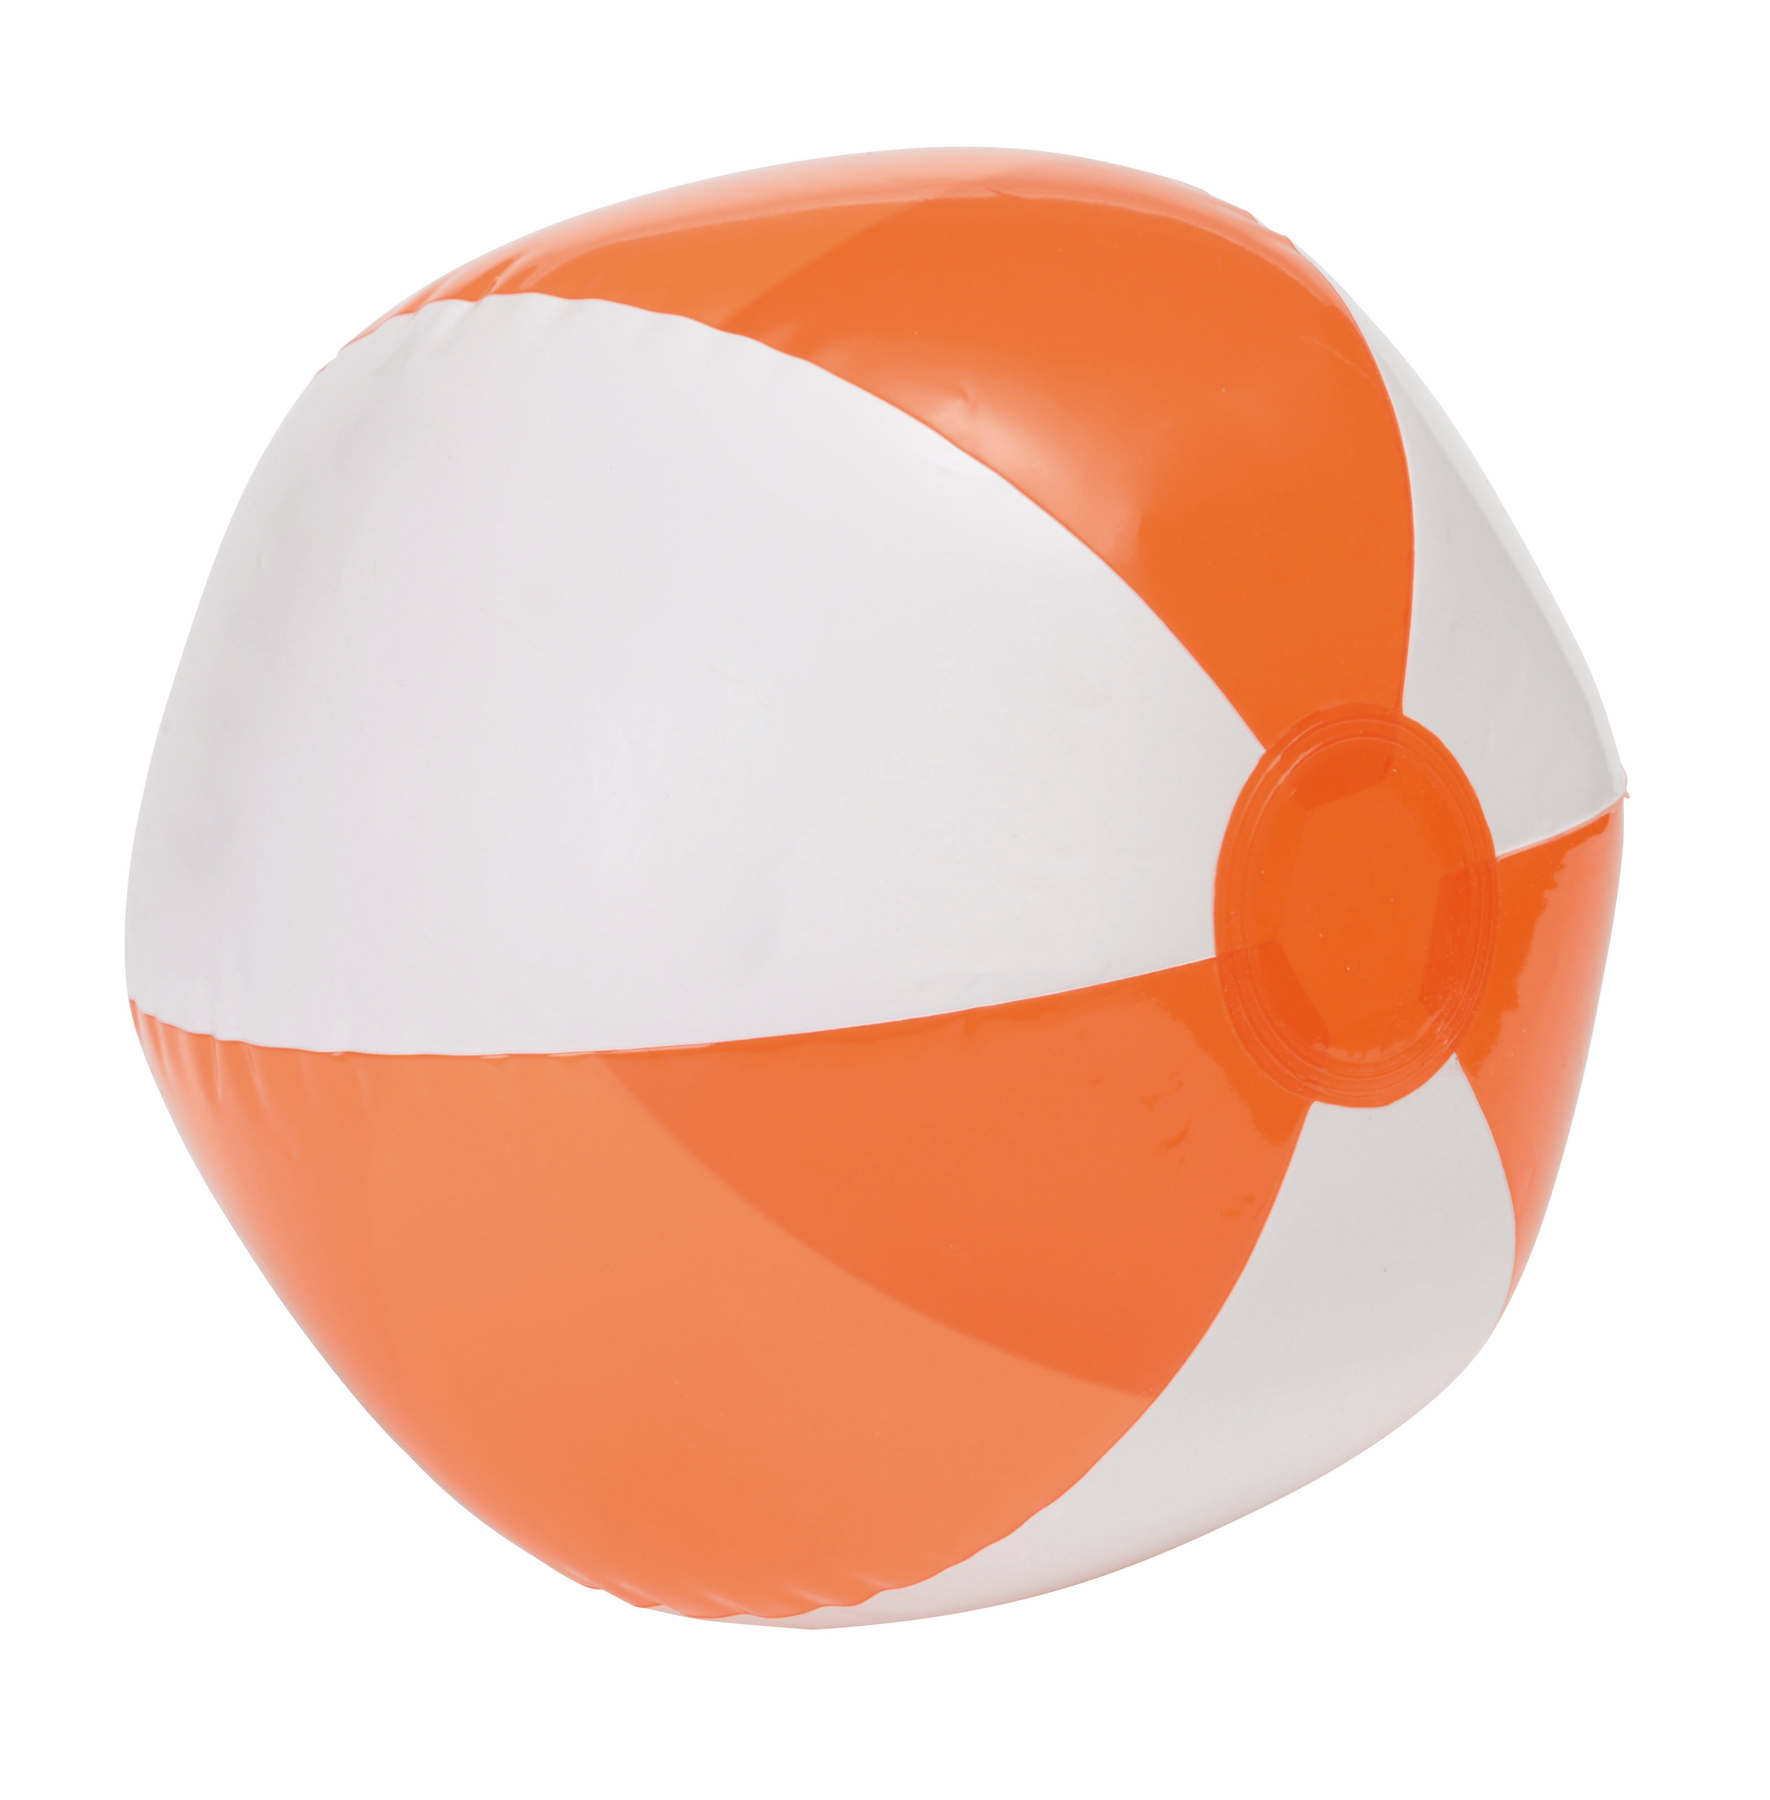 Piłka OCEAN, biały, transparentny pomarańczowy